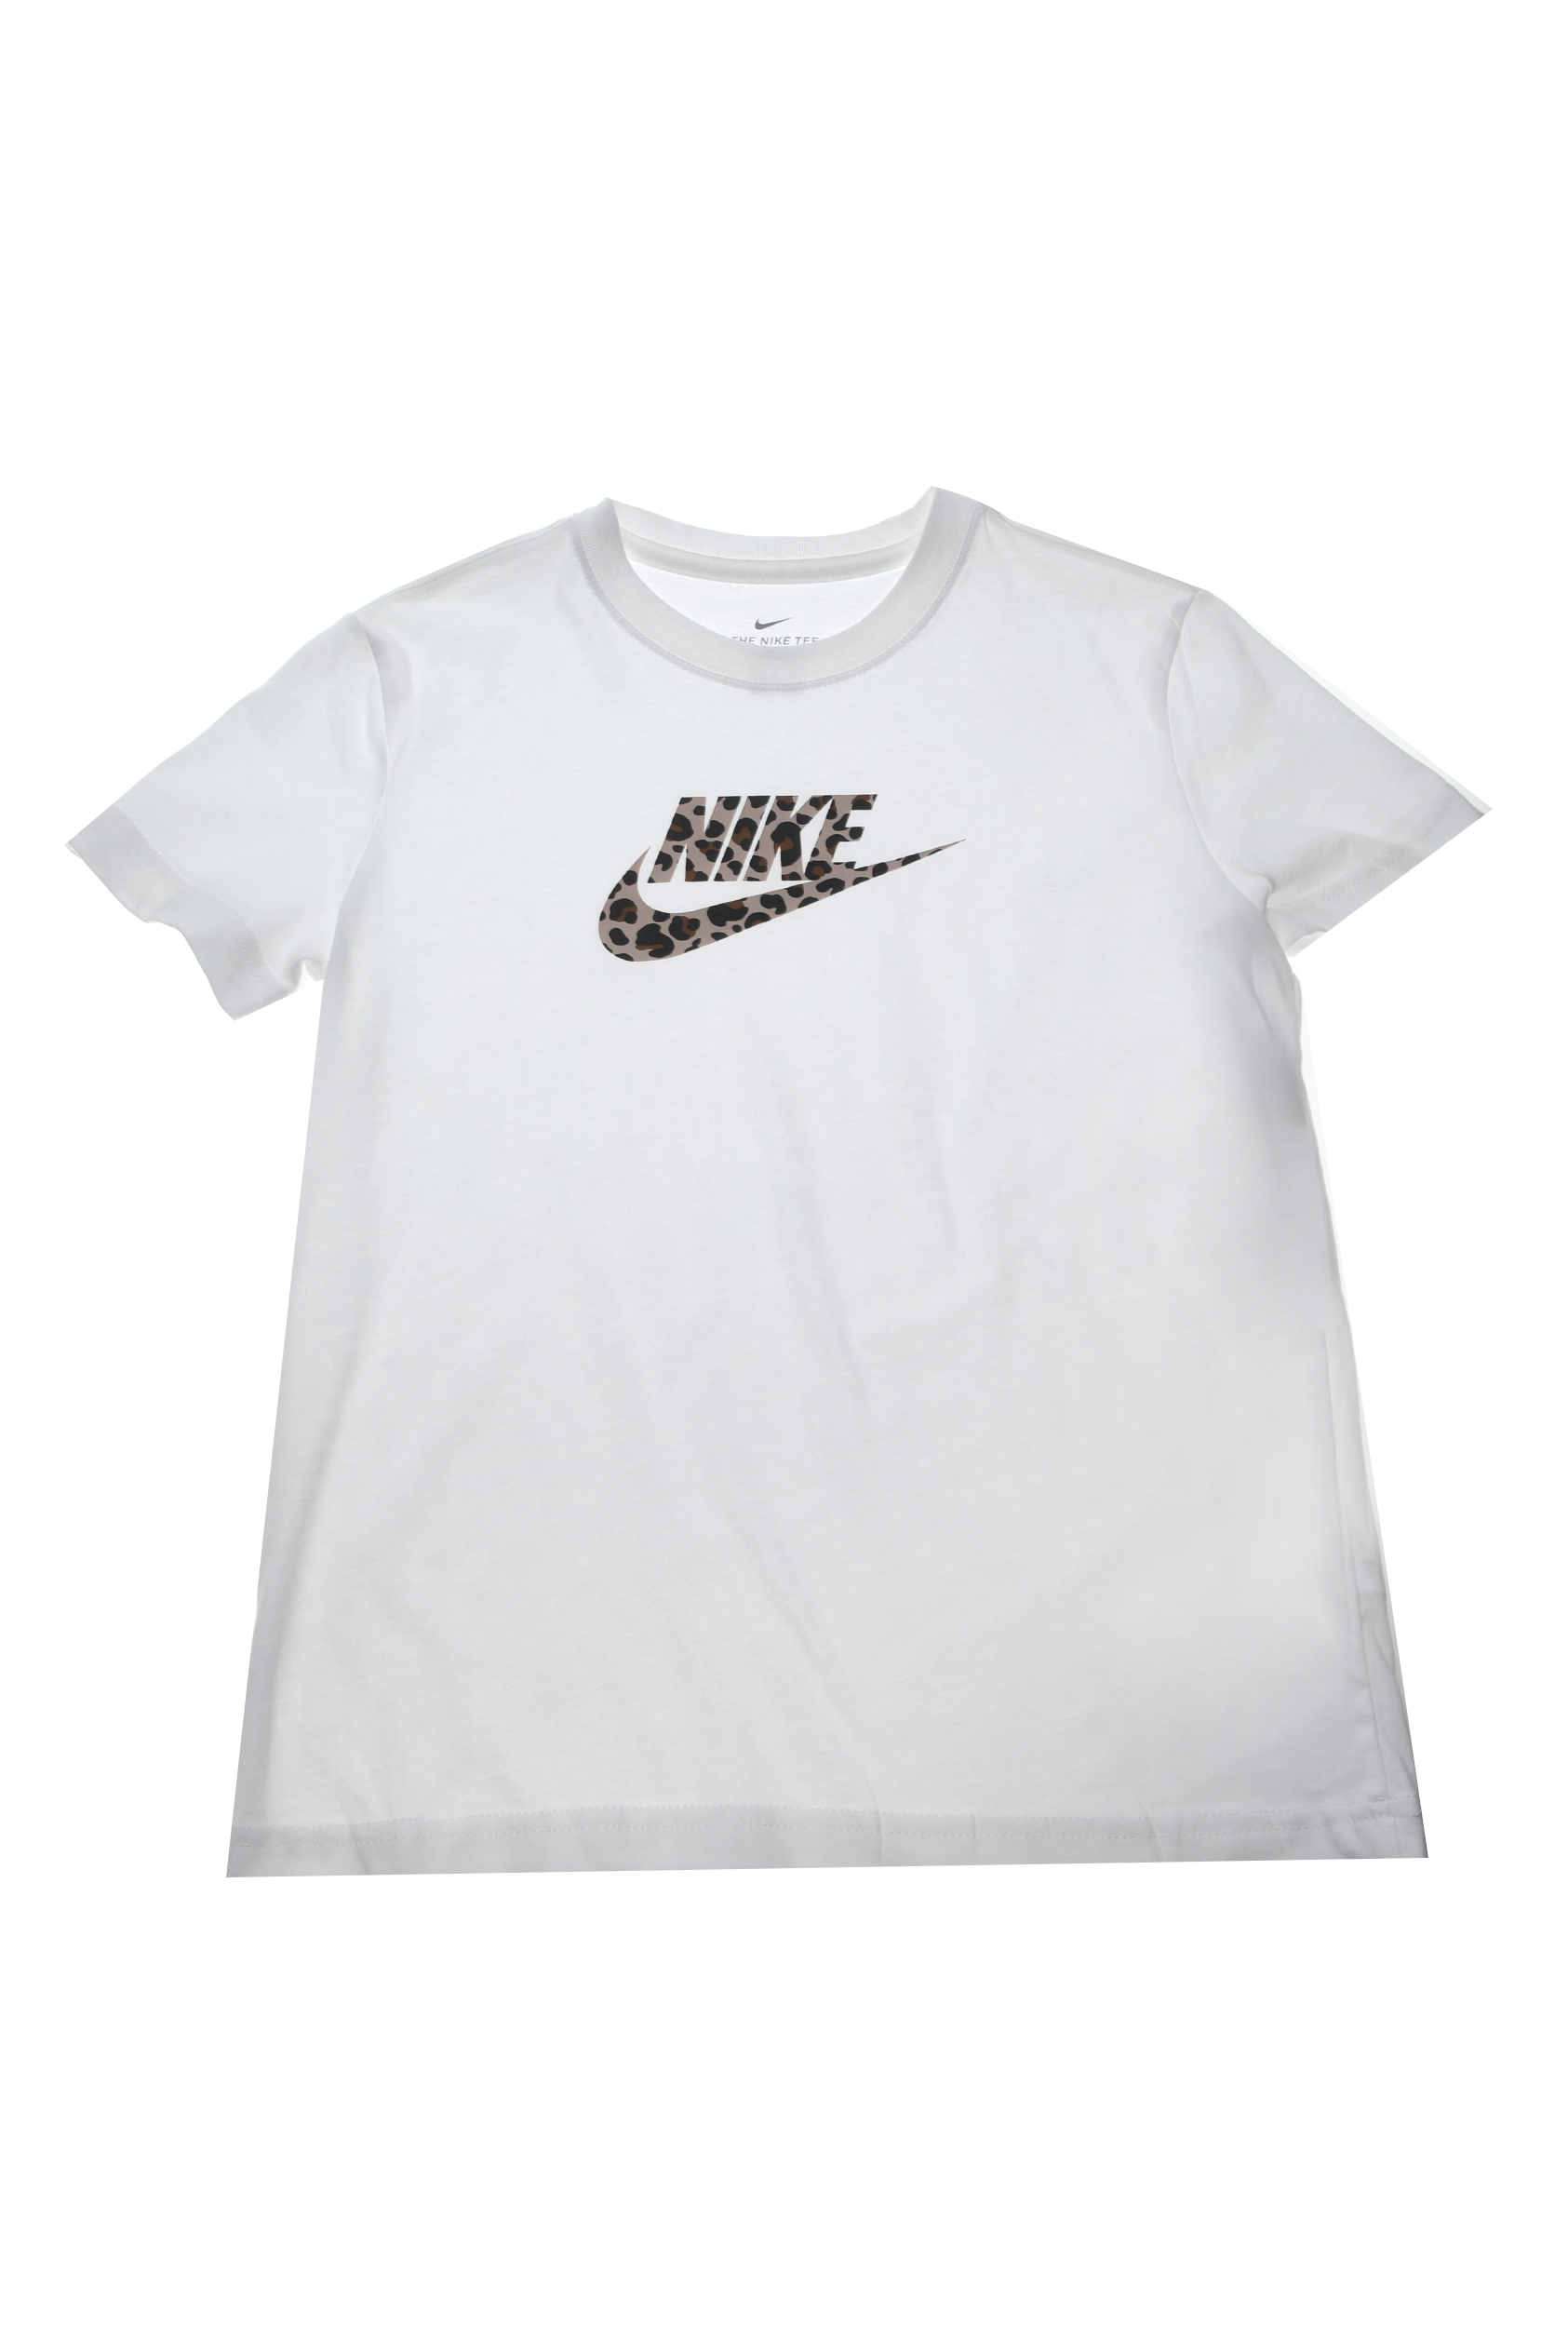 Παιδικά/Girls/Ρούχα/Αθλητικά NIKE - Παιδικό t-shirt ΝΙΚΕ NSW BF λευκό